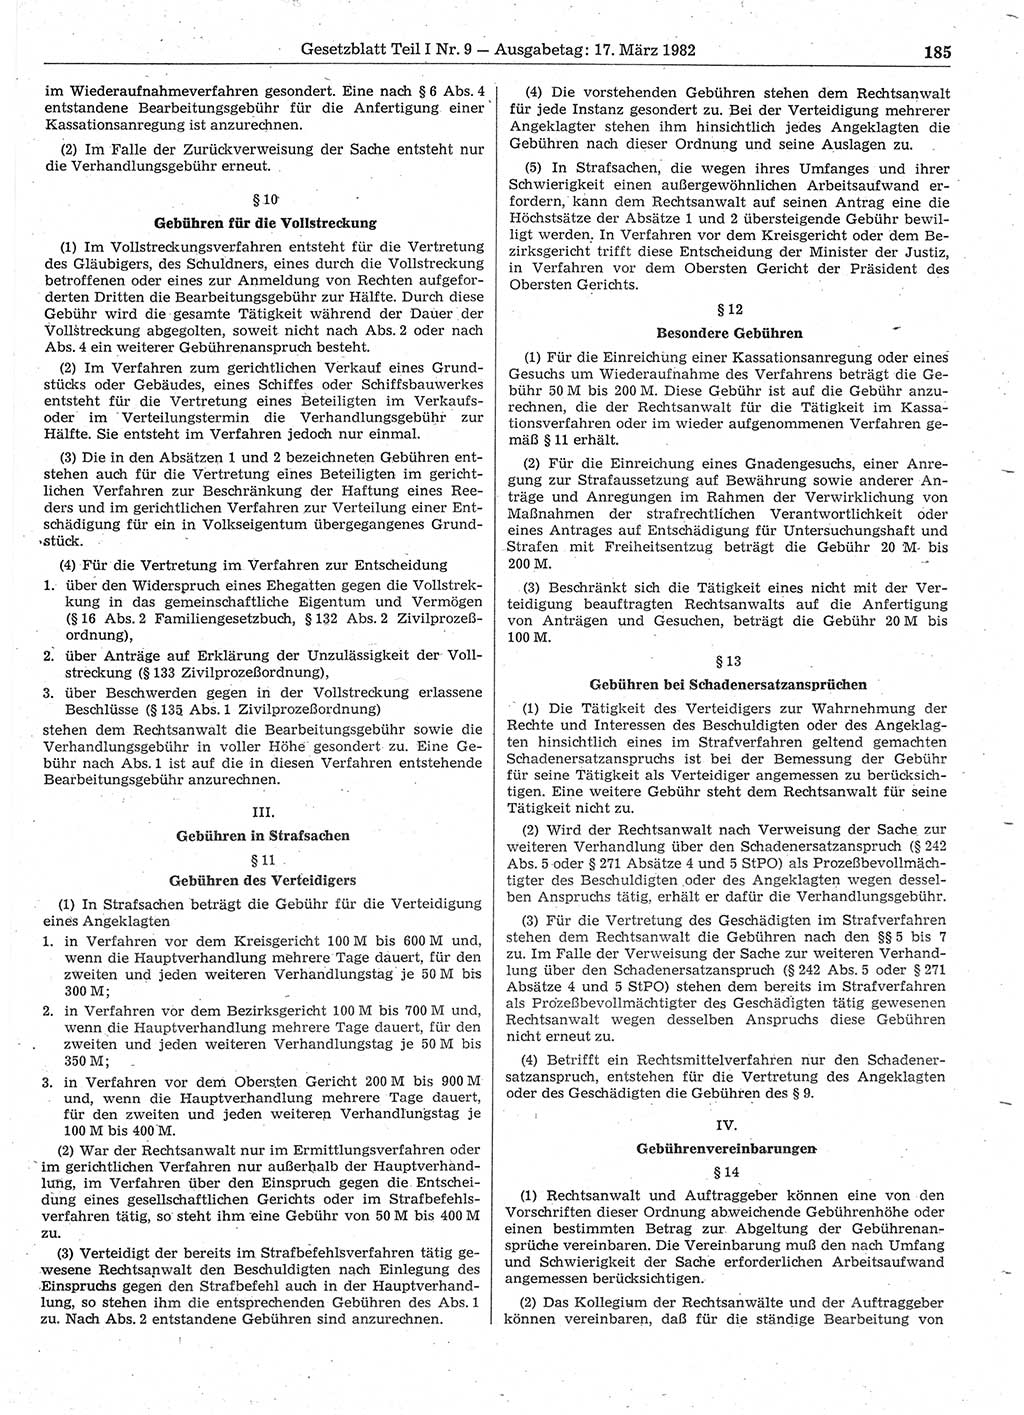 Gesetzblatt (GBl.) der Deutschen Demokratischen Republik (DDR) Teil Ⅰ 1982, Seite 185 (GBl. DDR Ⅰ 1982, S. 185)